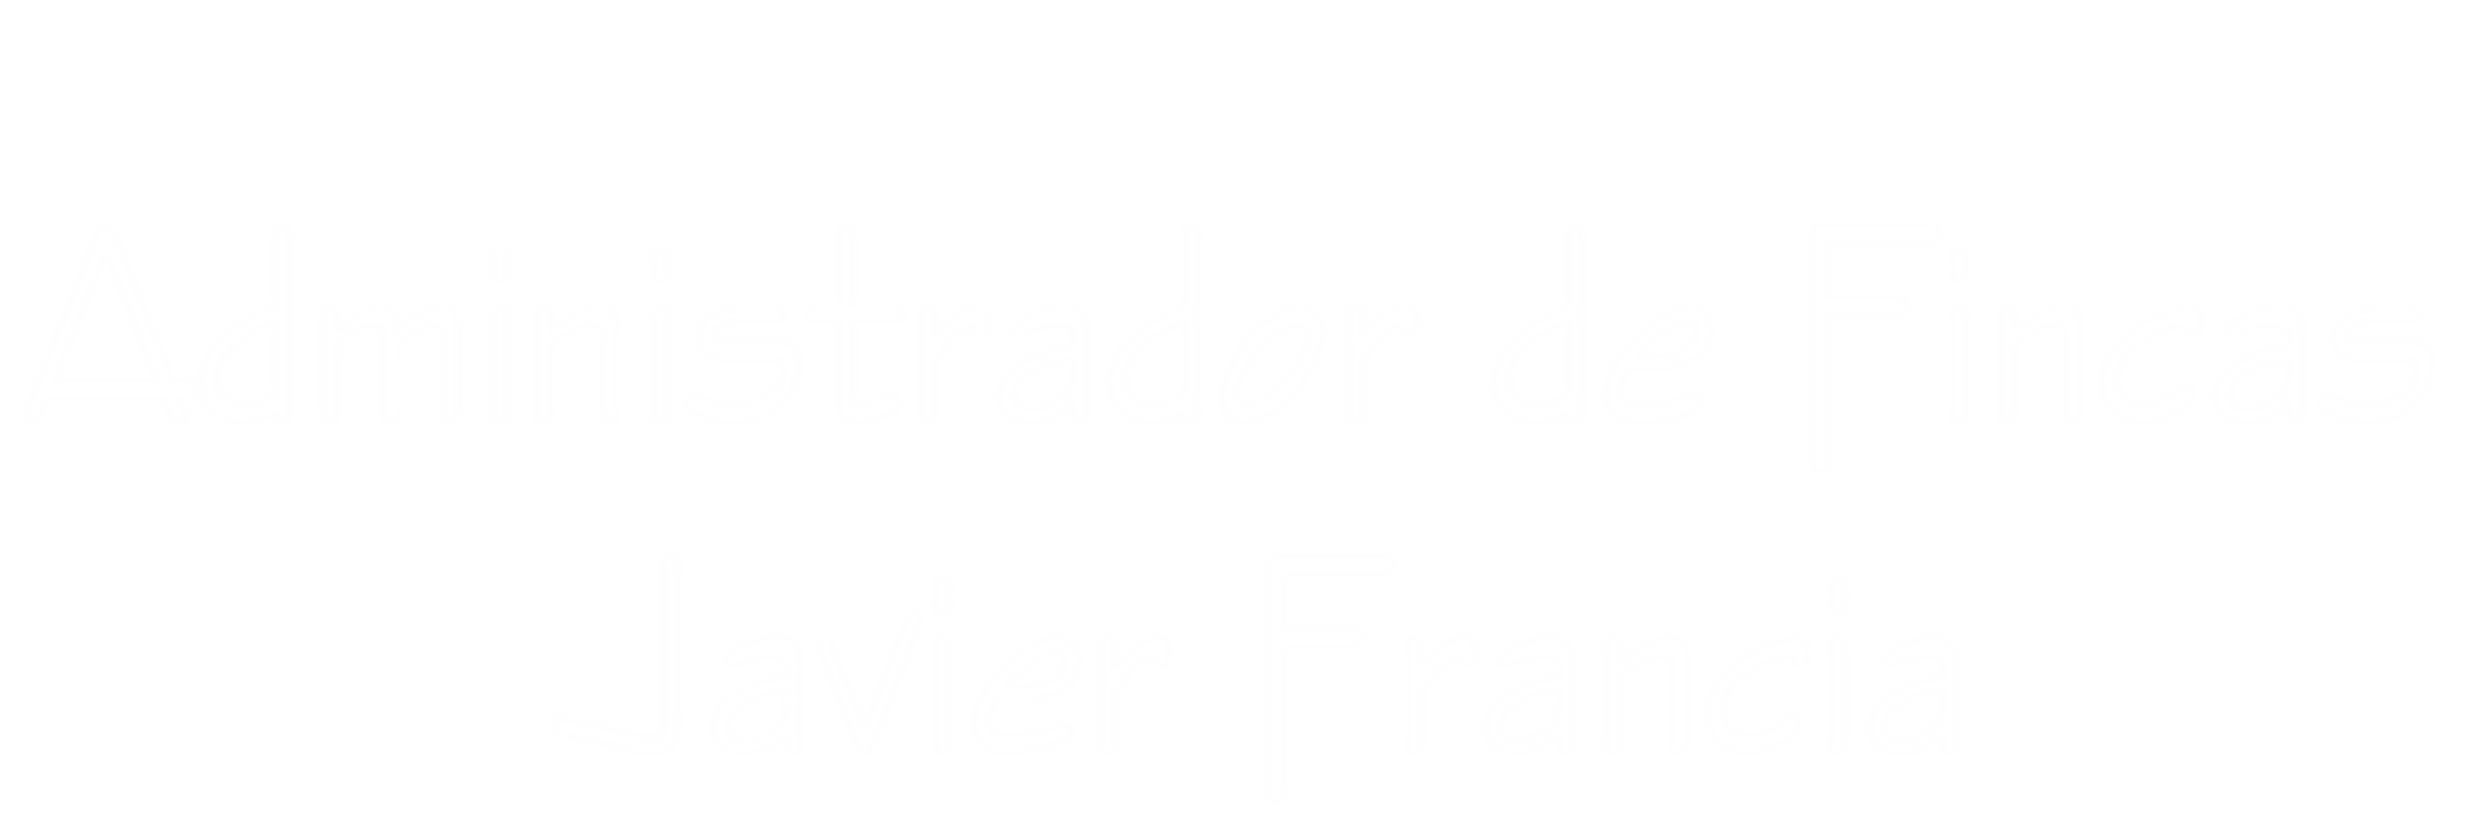 administrador-de-fincas-javier-francia-logo